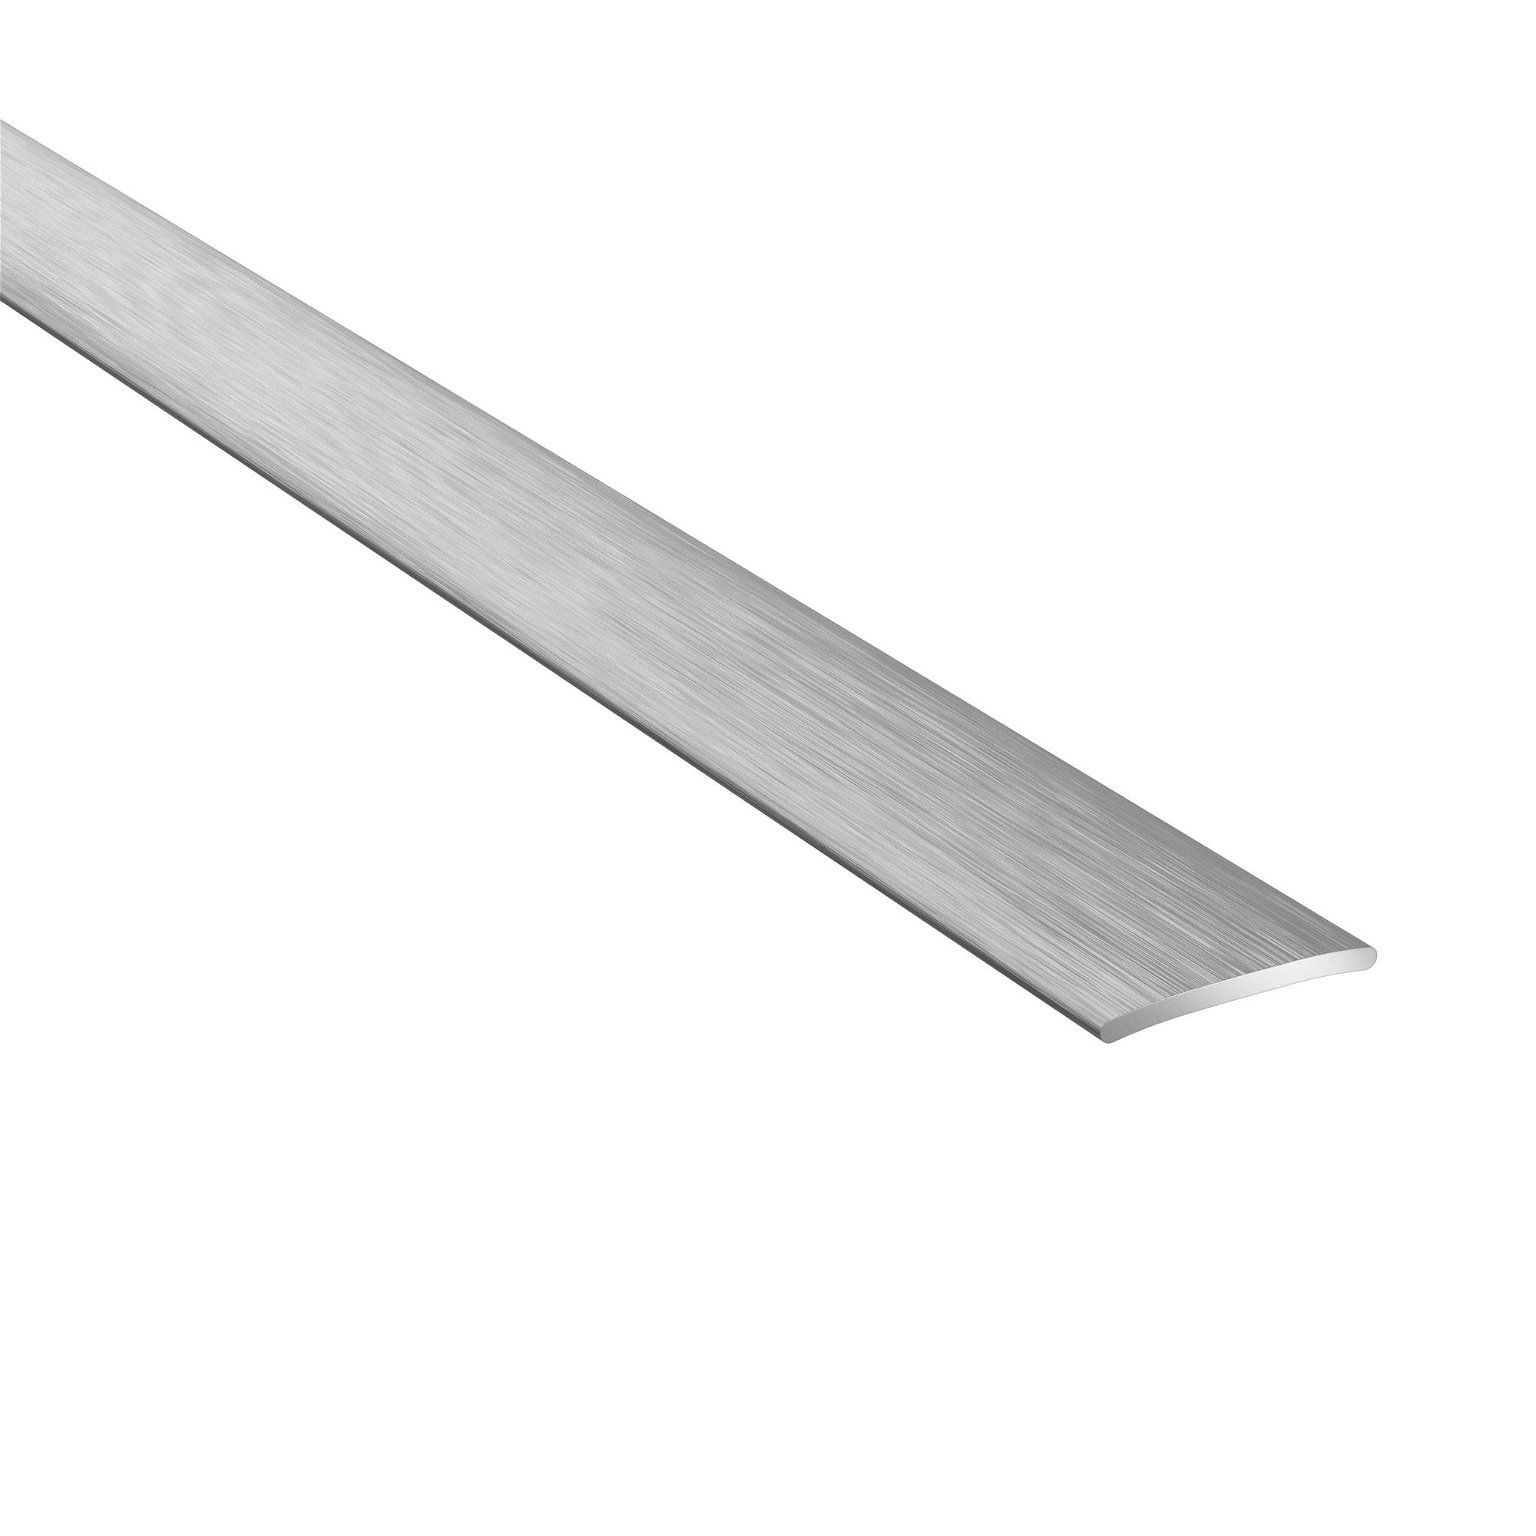 Aliumininė grindų juostelė PRO20 B1, šukuoto sidabro sp., 20 mm pločio, 93 cm ilgio